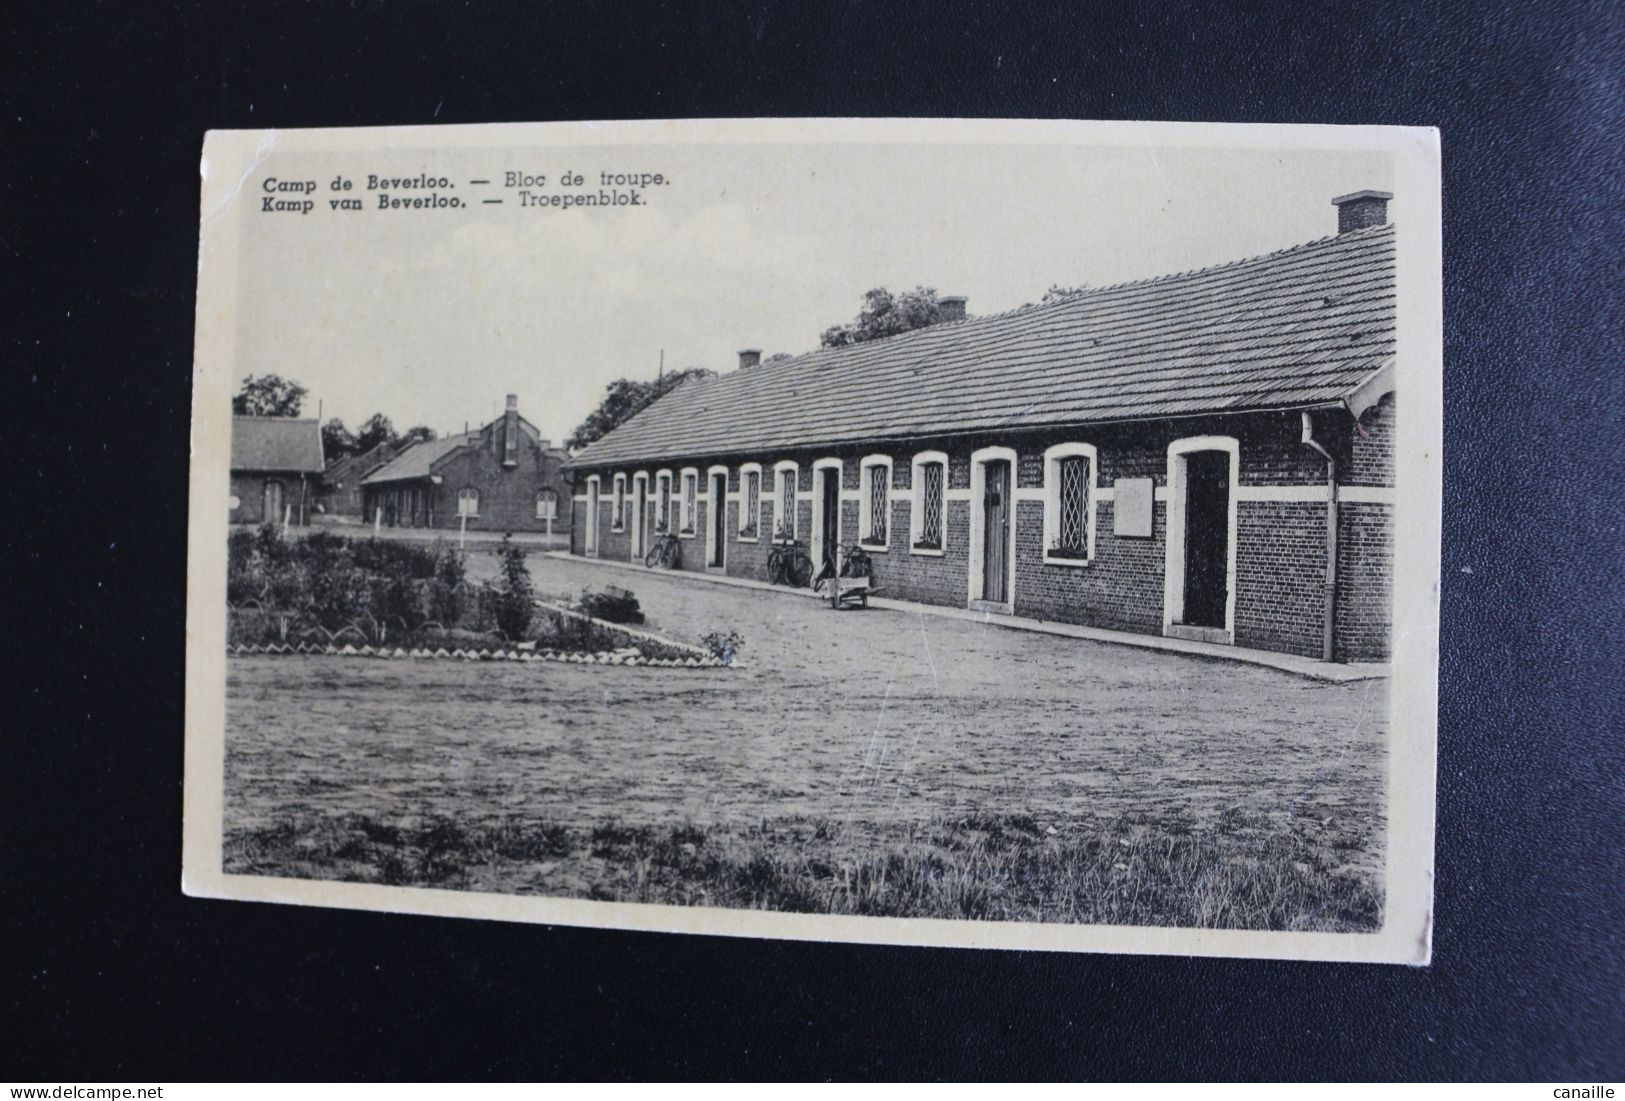 S-C 177 / Photo De Militaire -  Limbourg  Leopoldsburg (Camp De Beverloo) - Camp De Beverloo - Bloc De Troupe - Leopoldsburg (Kamp Van Beverloo)